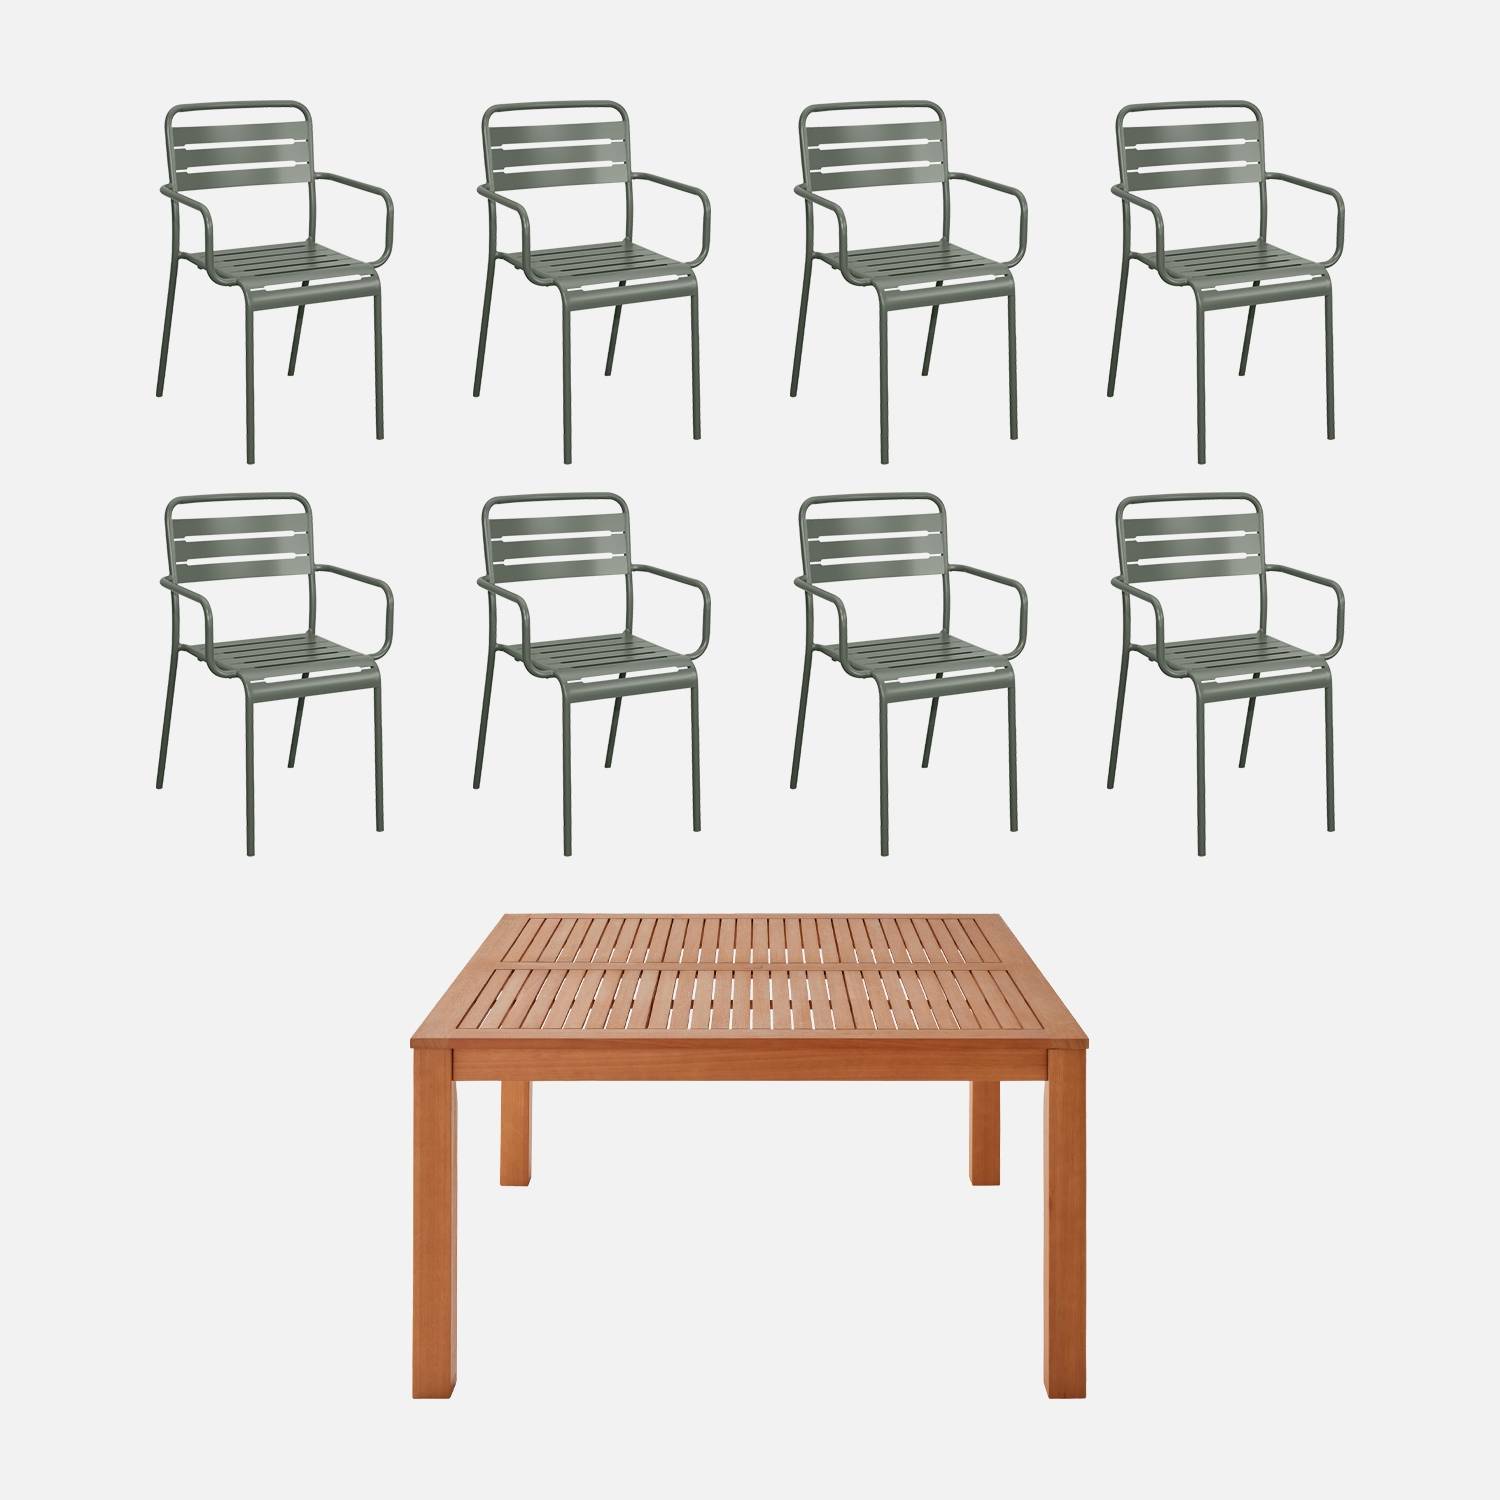 Table de jardin bois FSC+ 8 fauteuils savaneI sweeek